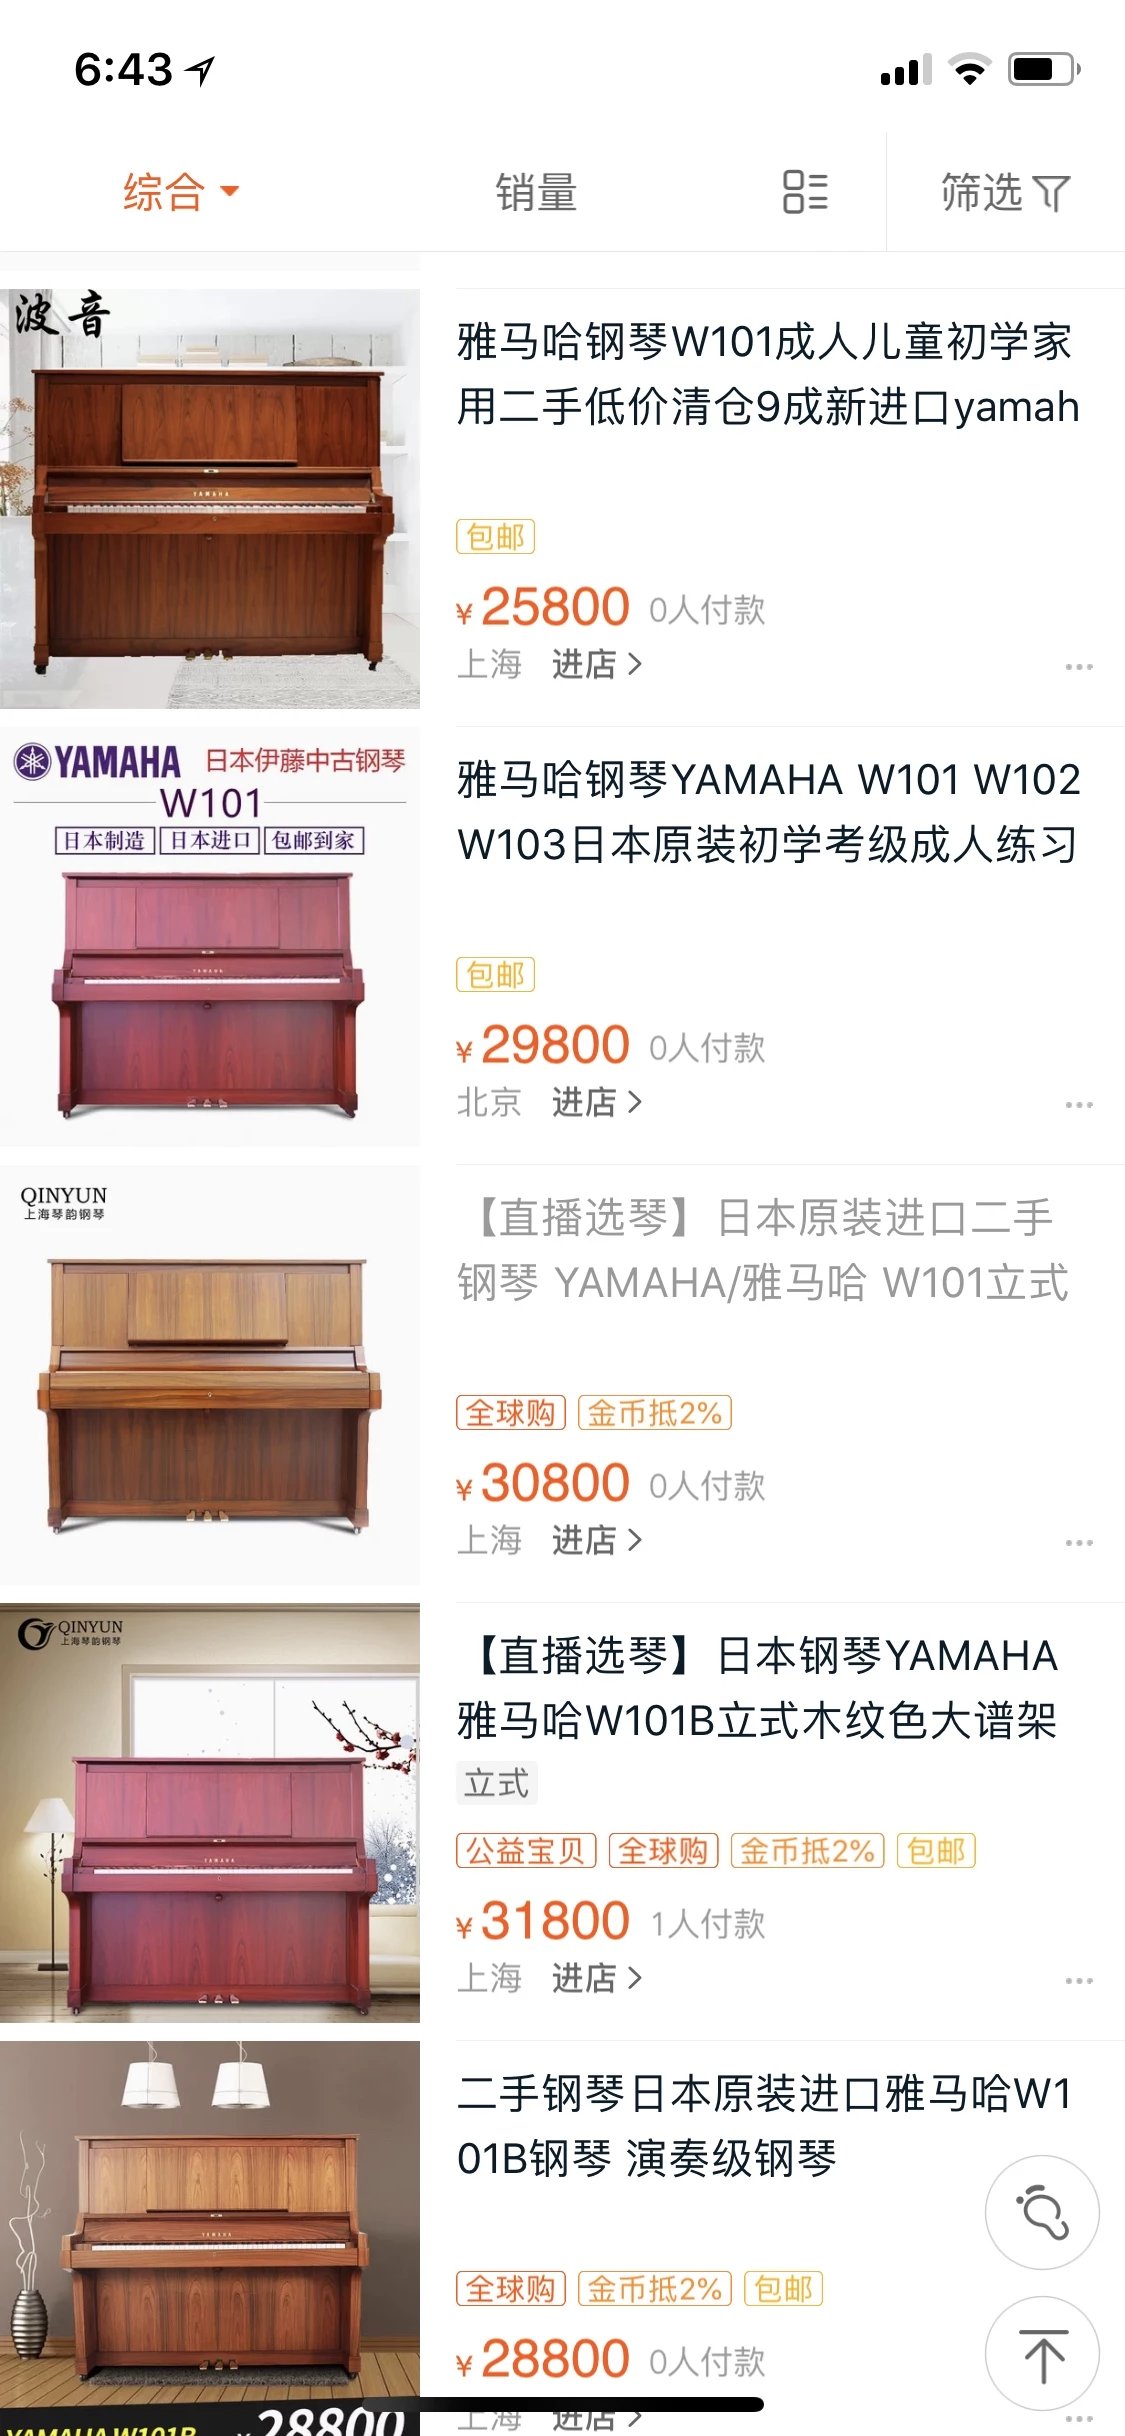 雅马哈钢琴W101 雅马哈钢琴W101 温岭二手钢琴